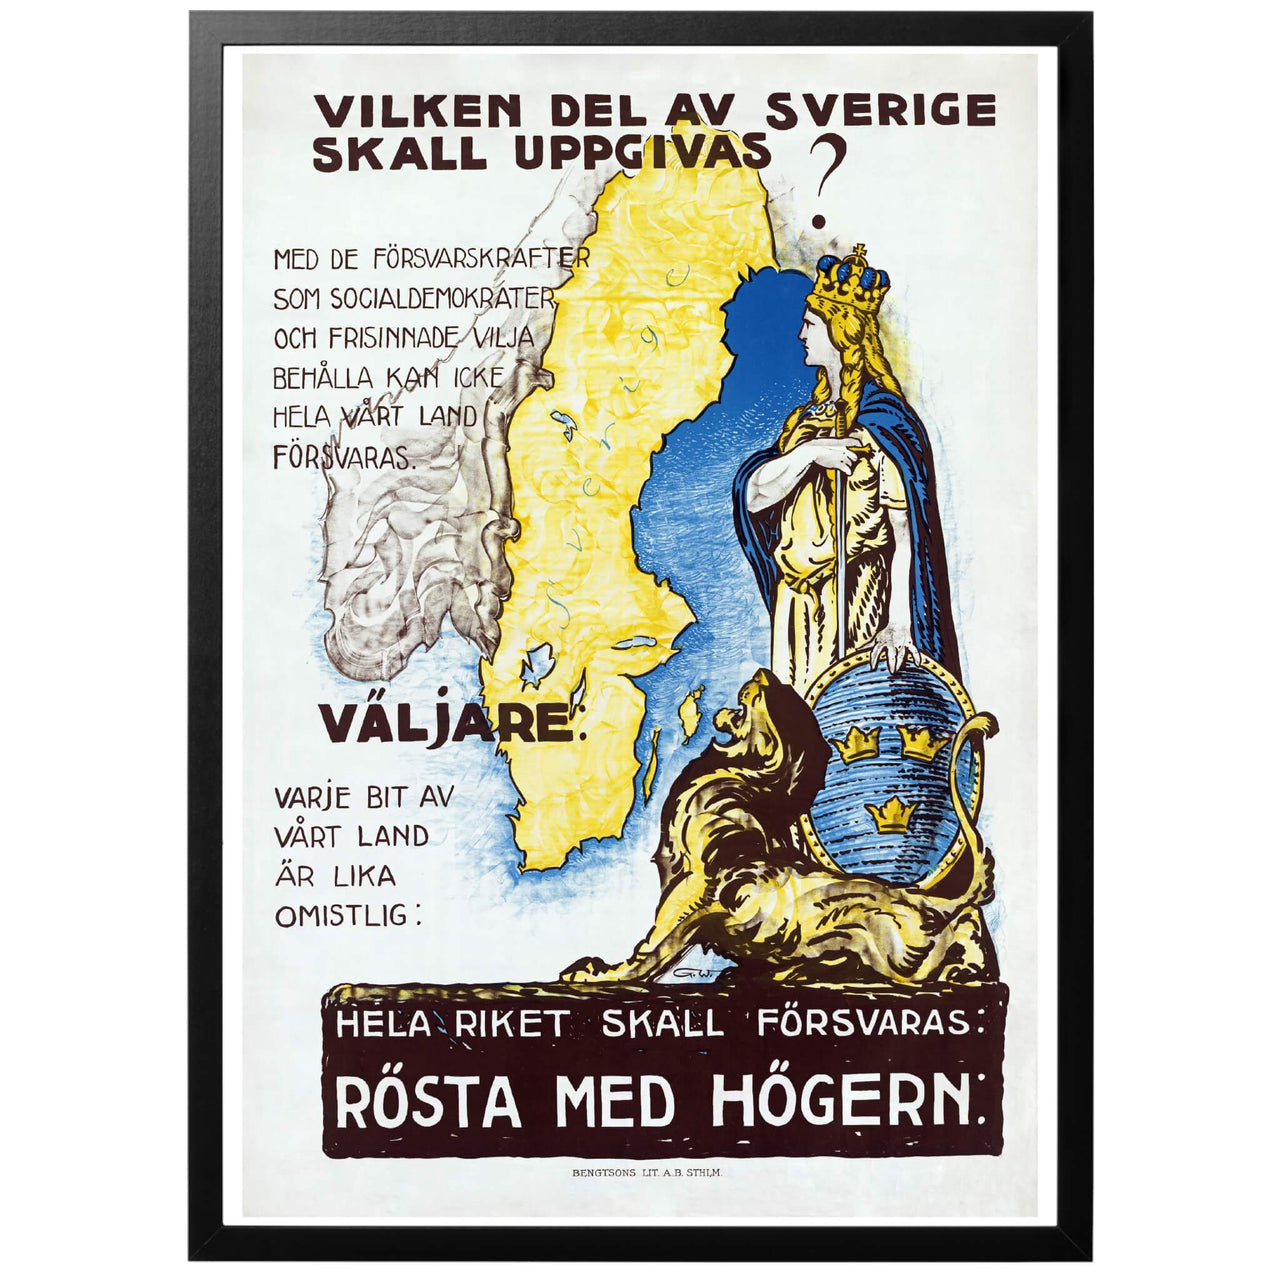 Vilken del av Sverige skall uppgivas? Poster